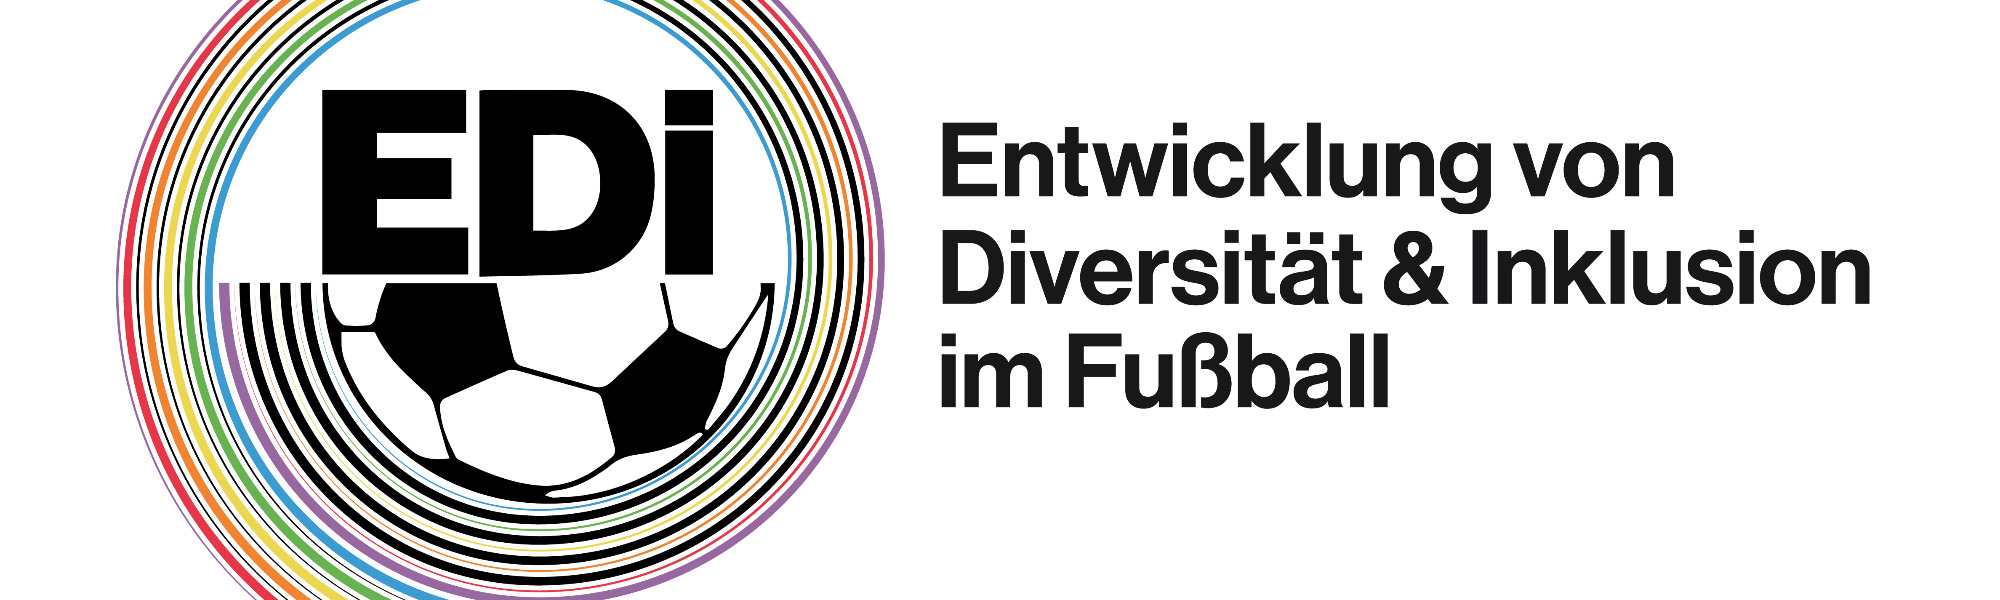 Logo von EDi. Schriftzug und halber Fußball in schwarz-weiß. Davon ausgehend bunte Kreise in Regenbogenfarben.